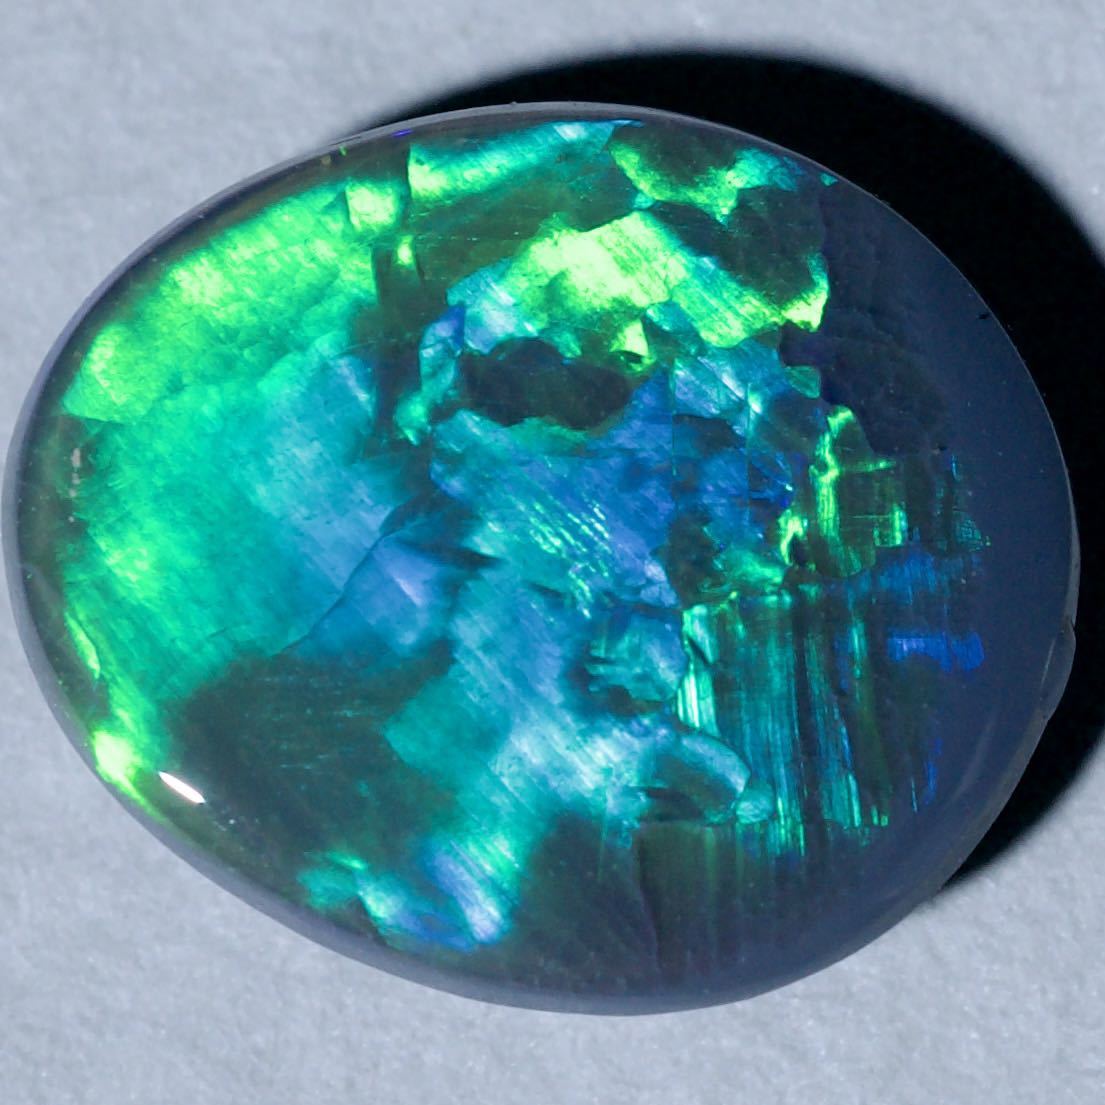  натуральный black opal / разрозненный / вес 1.18ct/ размер длина 9.1.x ширина 7.7.x высота 2.8./ Австралия производство / натуральный опал / натуральный камень 